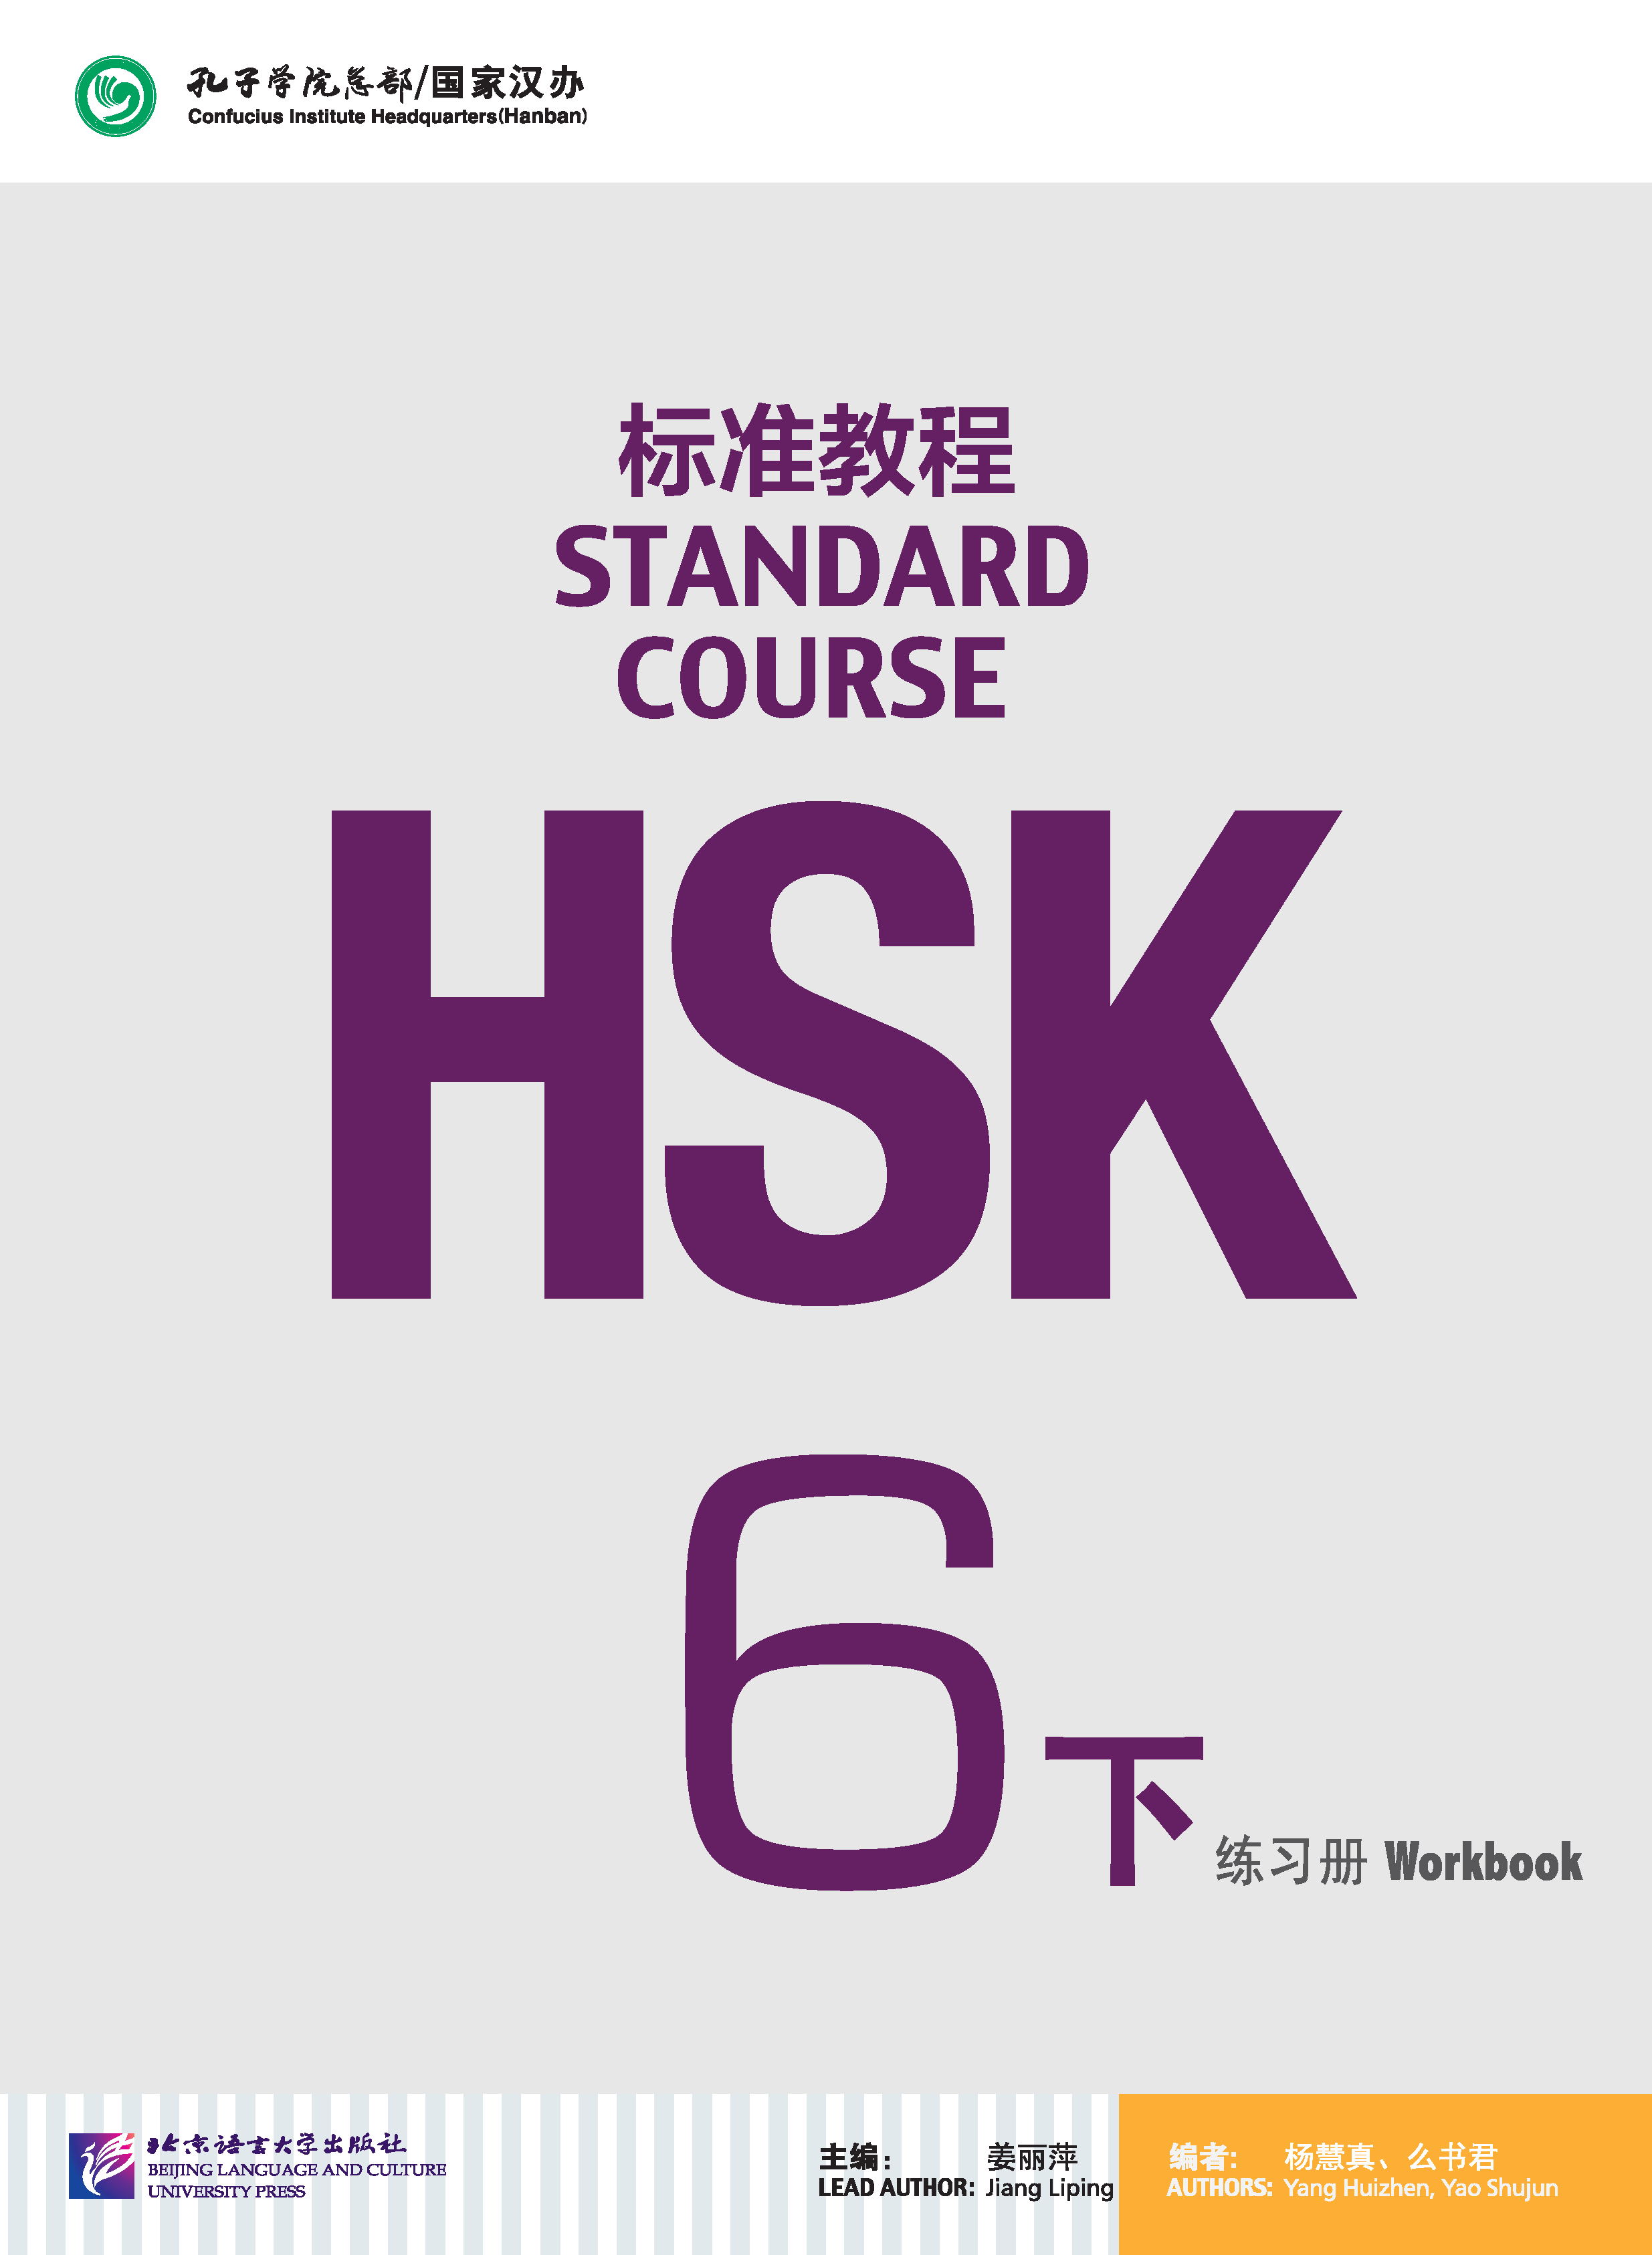 แบบฝึกหัด HSK / Stand Course HSK 6B Workbook / HSK 标准教程 6下 练习册